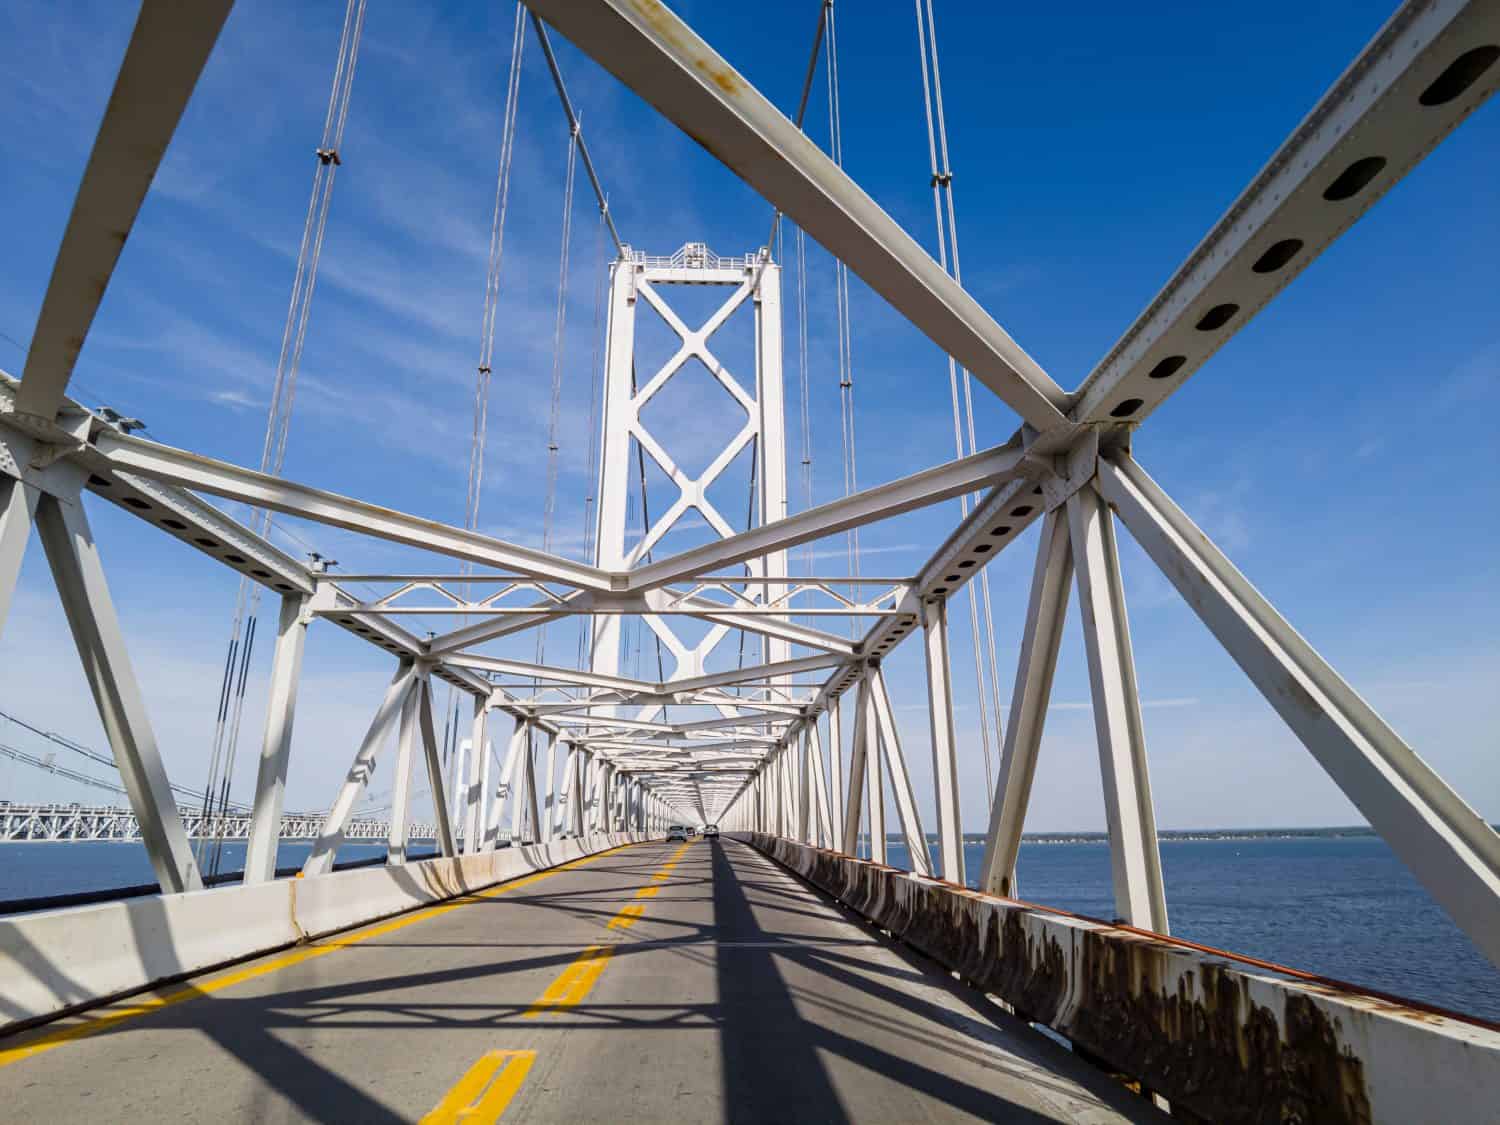 Immagine che mostra l'attraversamento del famoso ponte di Chesapeake Bay (William Preston Lane Jr. Memorial Bridge) sotto le travi di sospensione di piloni in stile traliccio metallico.  Si vedono le torri sull'altro lato.